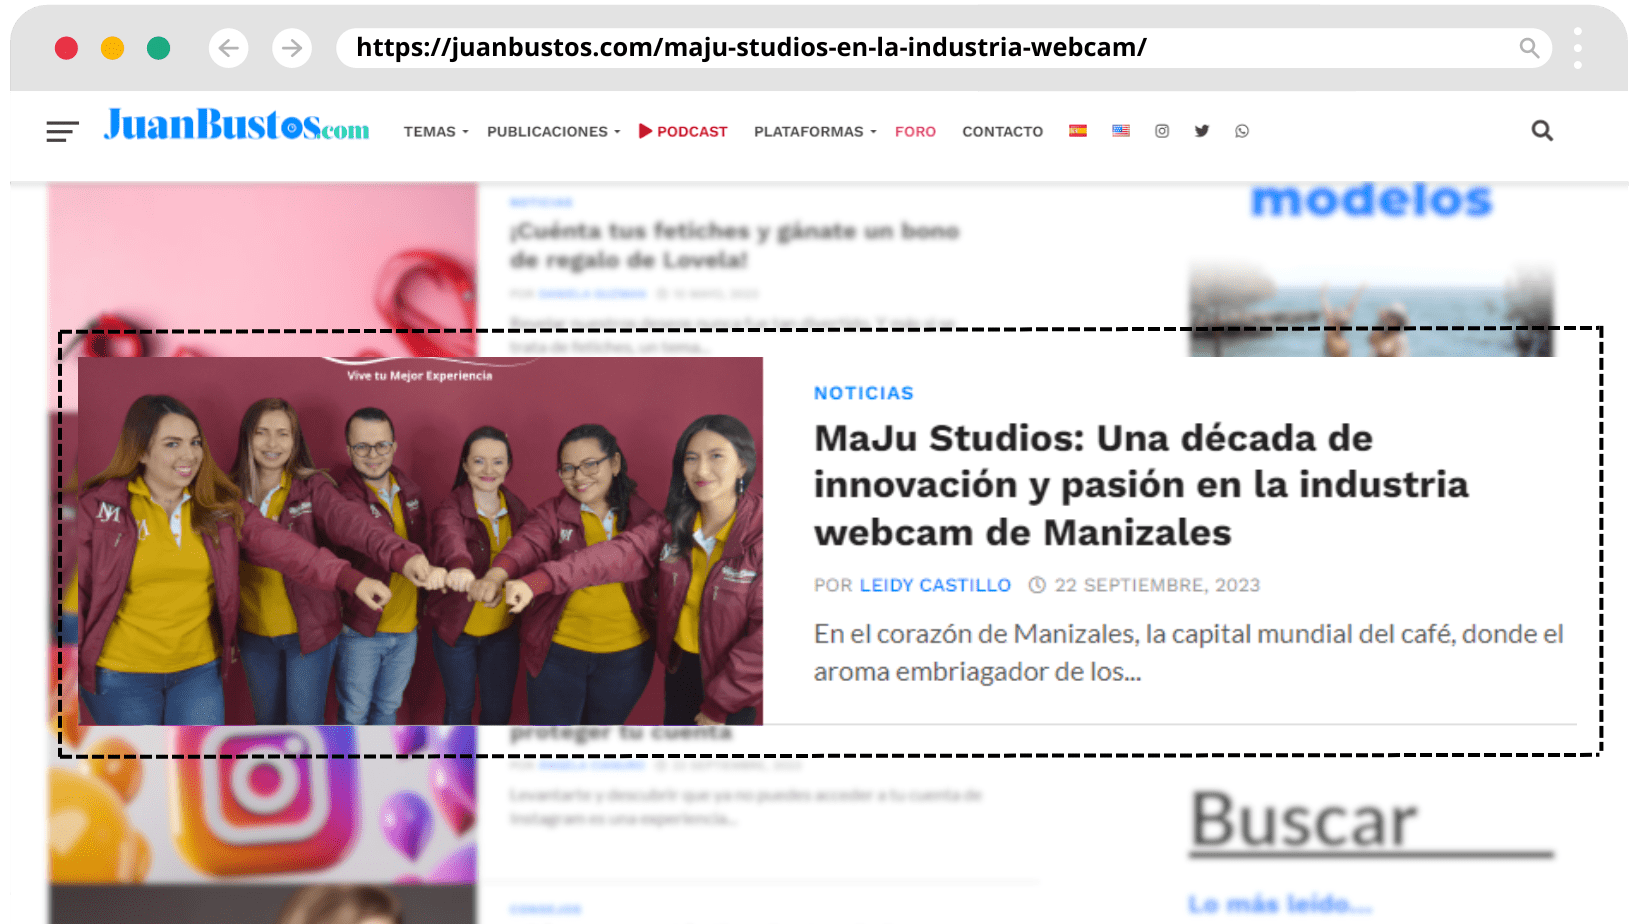 MaJu Studios: Una década de innovación y pasión en la industria webcam de Manizales